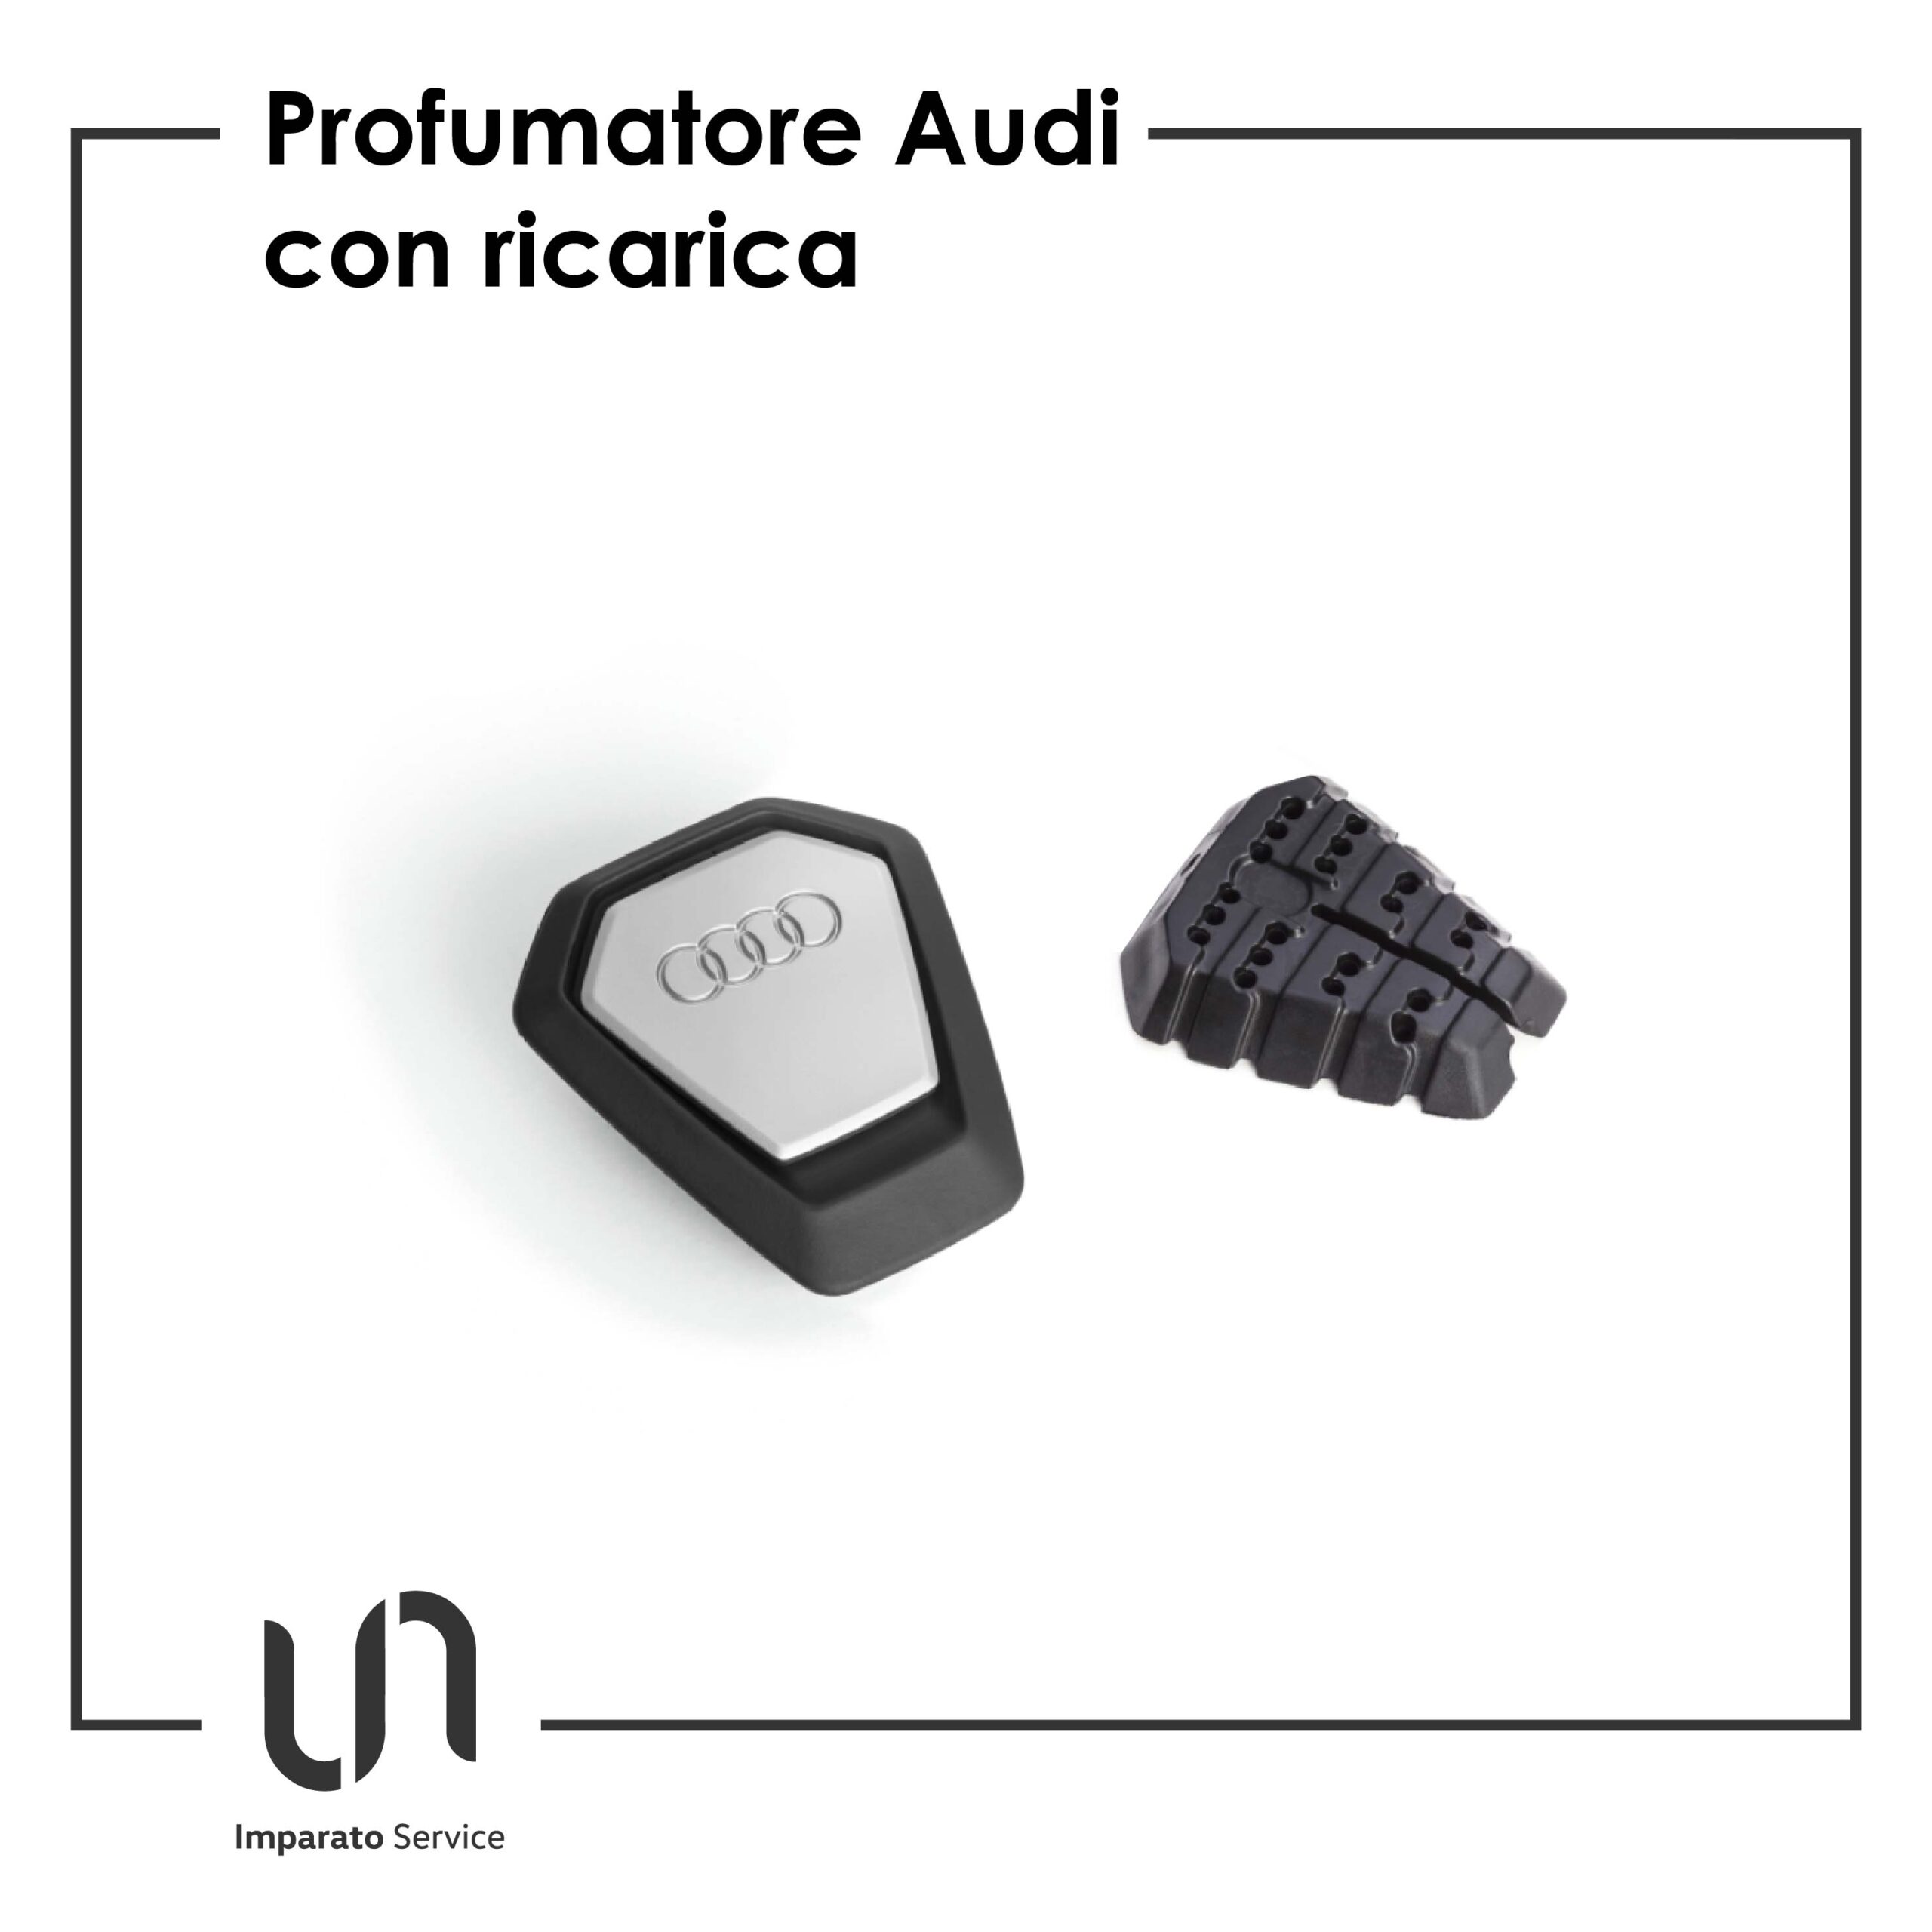 Profumatore Audi nero + 1 ricarica – accessorio originale